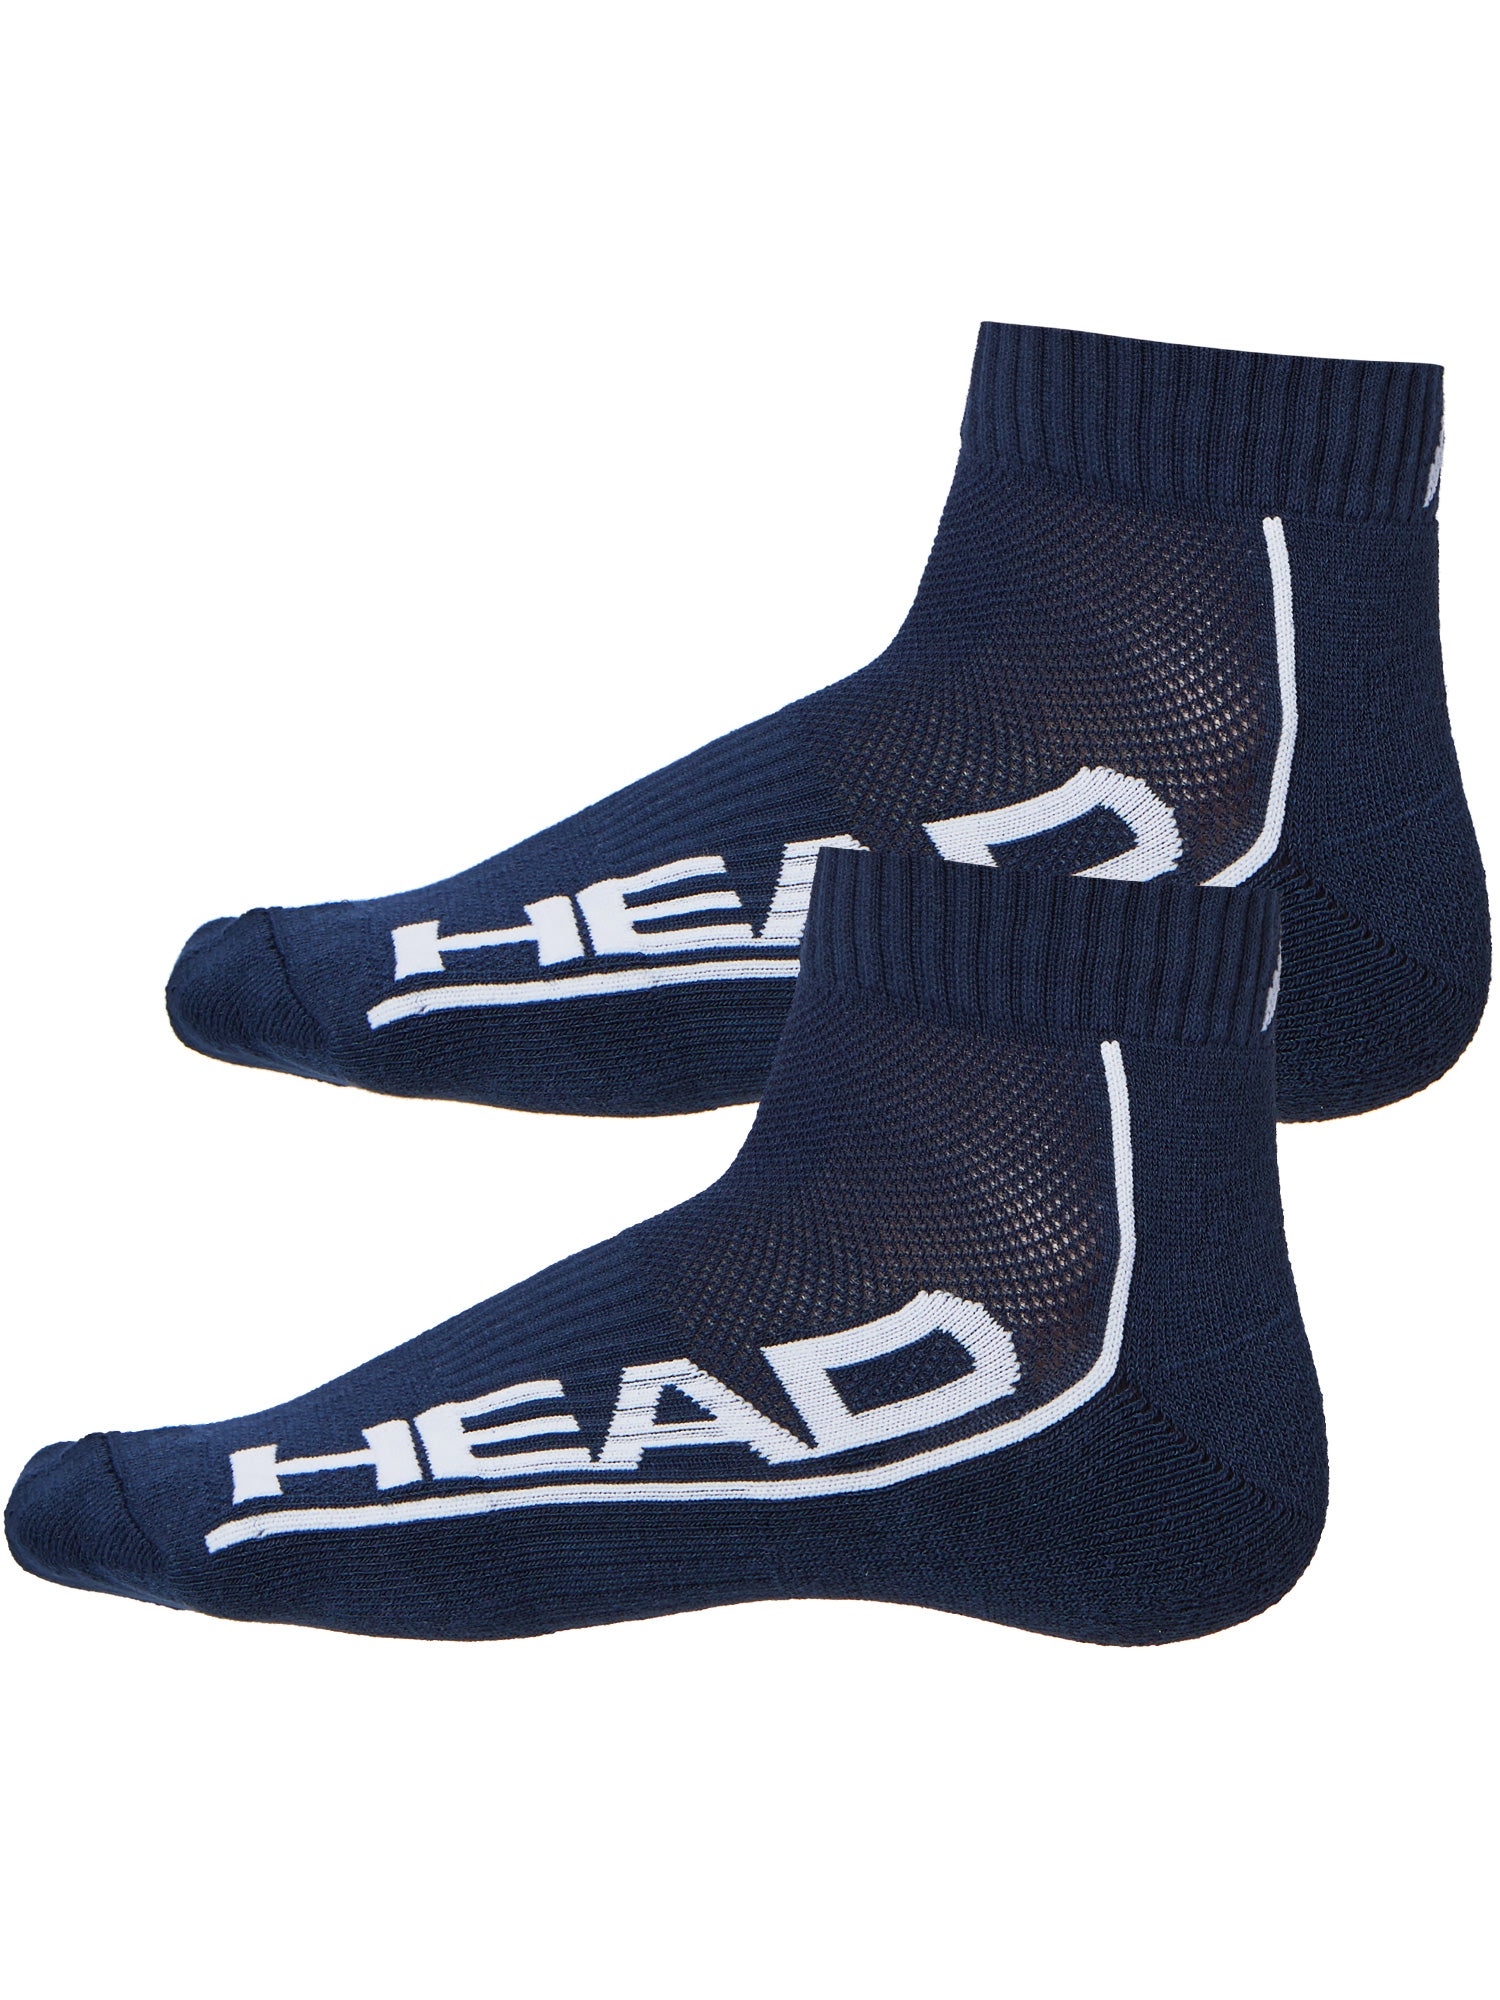 HEAD Tennis Socks Pack of 2 